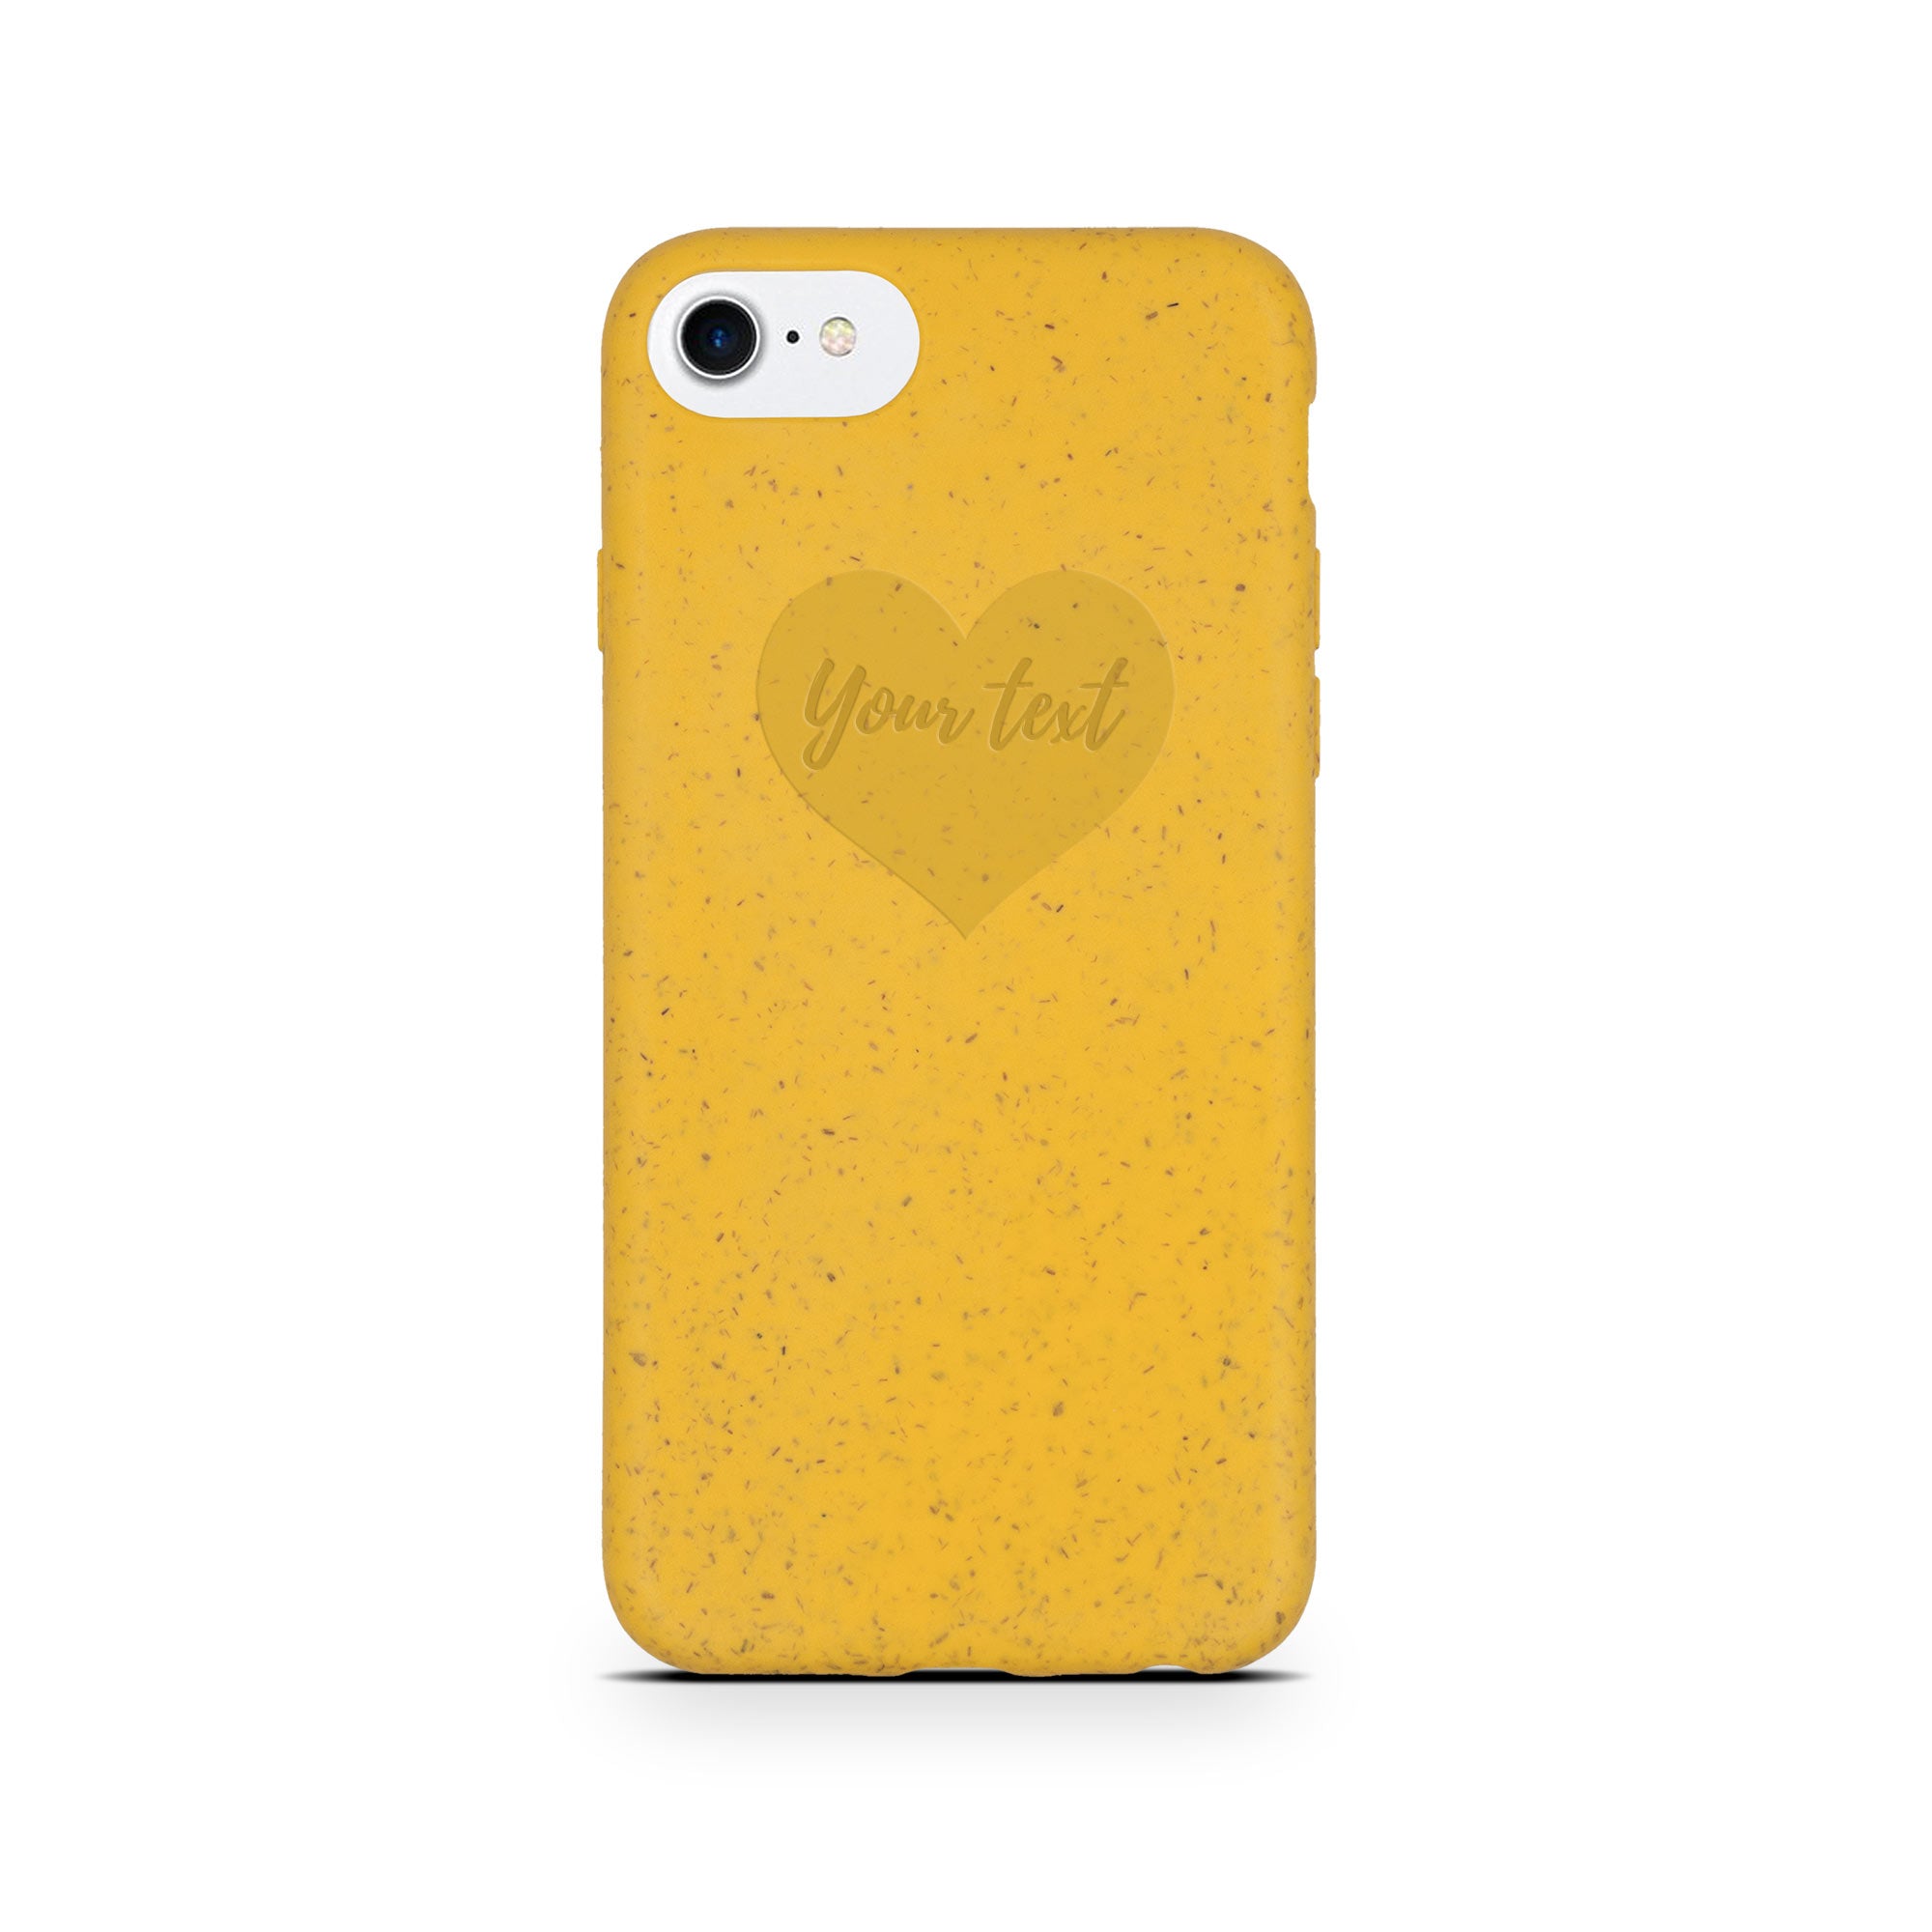 iPhone SE texto personalizado en carcasa amarilla con forma de corazón